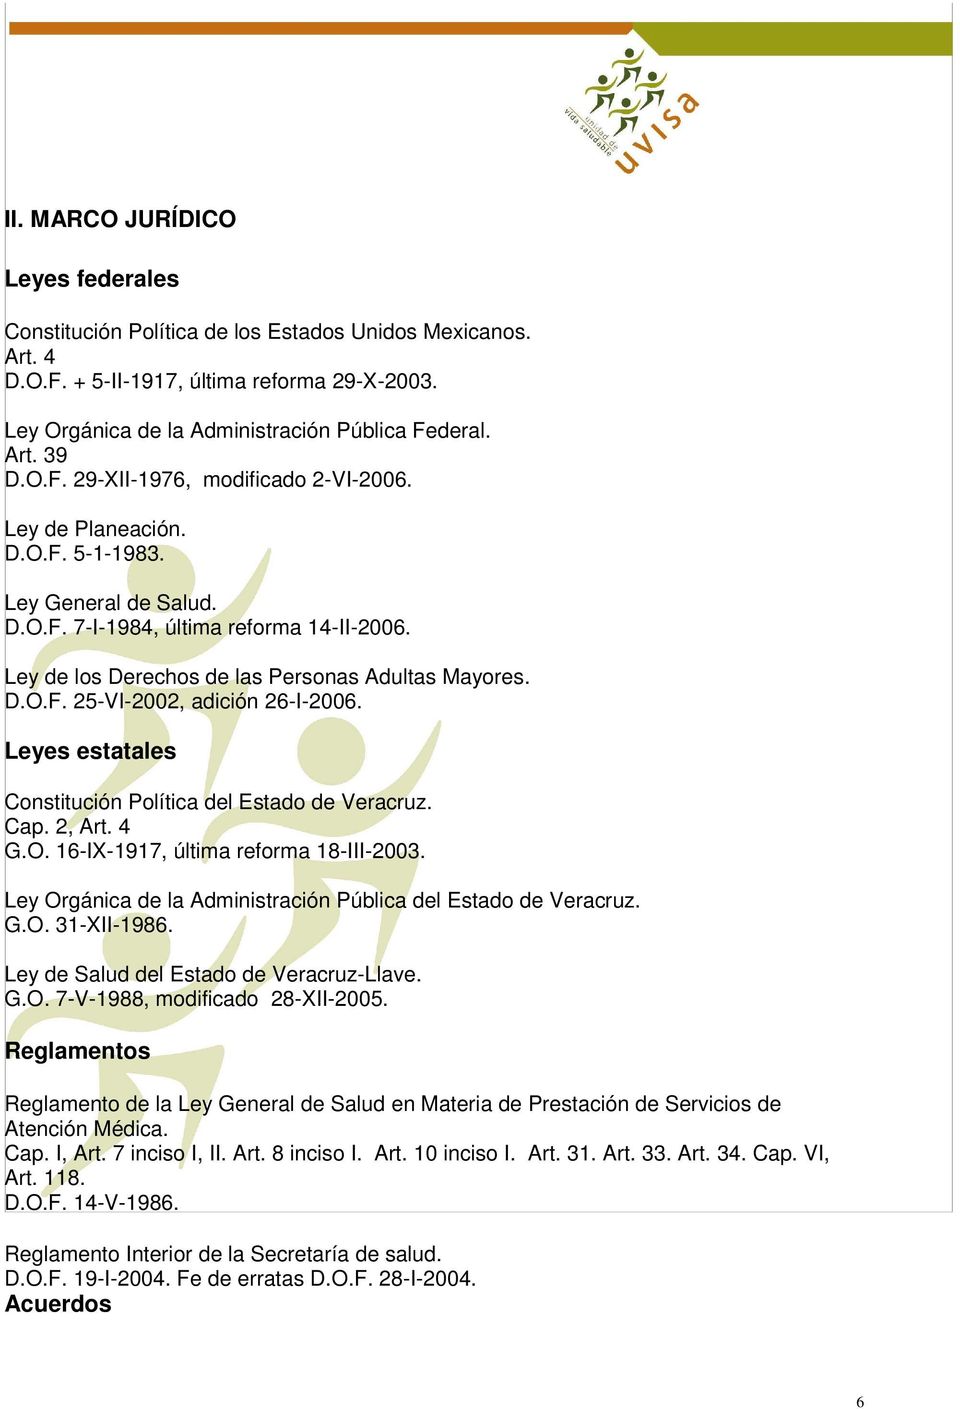 Leyes estatales Constitución Política del Estado de Veracruz. Cap. 2, Art. 4 G.O. 16-IX-1917, última reforma 18-III-2003. Ley Orgánica de la Administración Pública del Estado de Veracruz. G.O. 31-XII-1986.